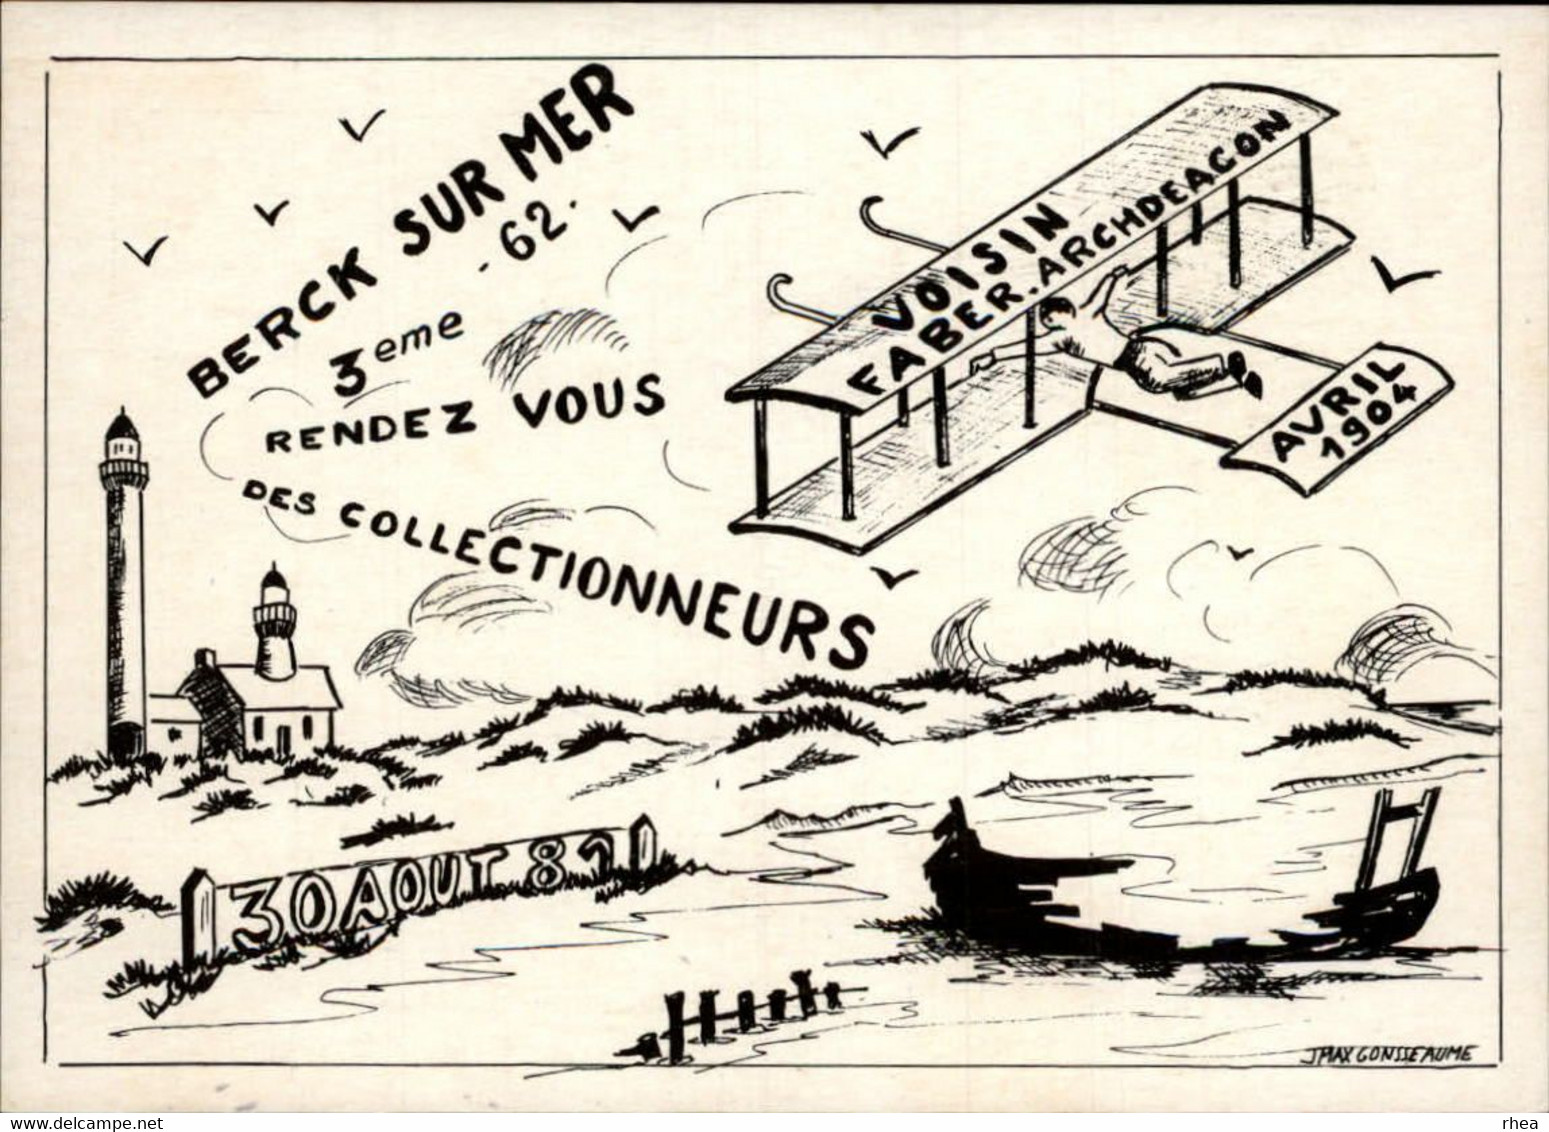 SALONS DE COLLECTIONS - Collectionneurs - Salon De Cartes Postales 1981 - 62 BERCK SUR MER - Dessin De Gonsseaume - Bourses & Salons De Collections